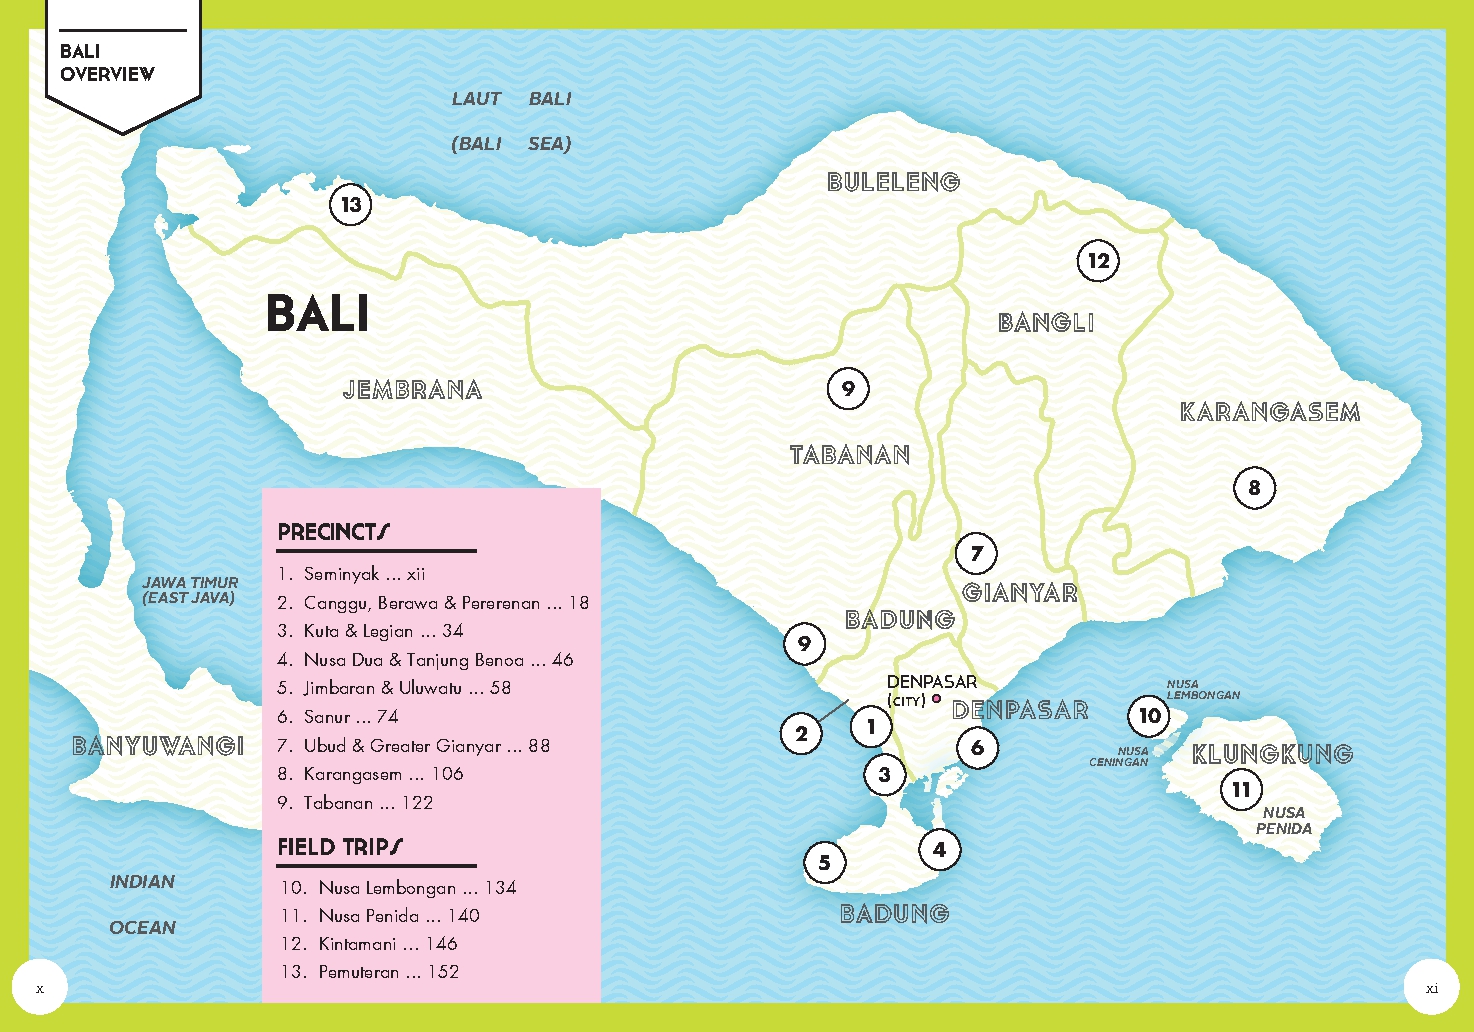 Bali Pocket Precincts